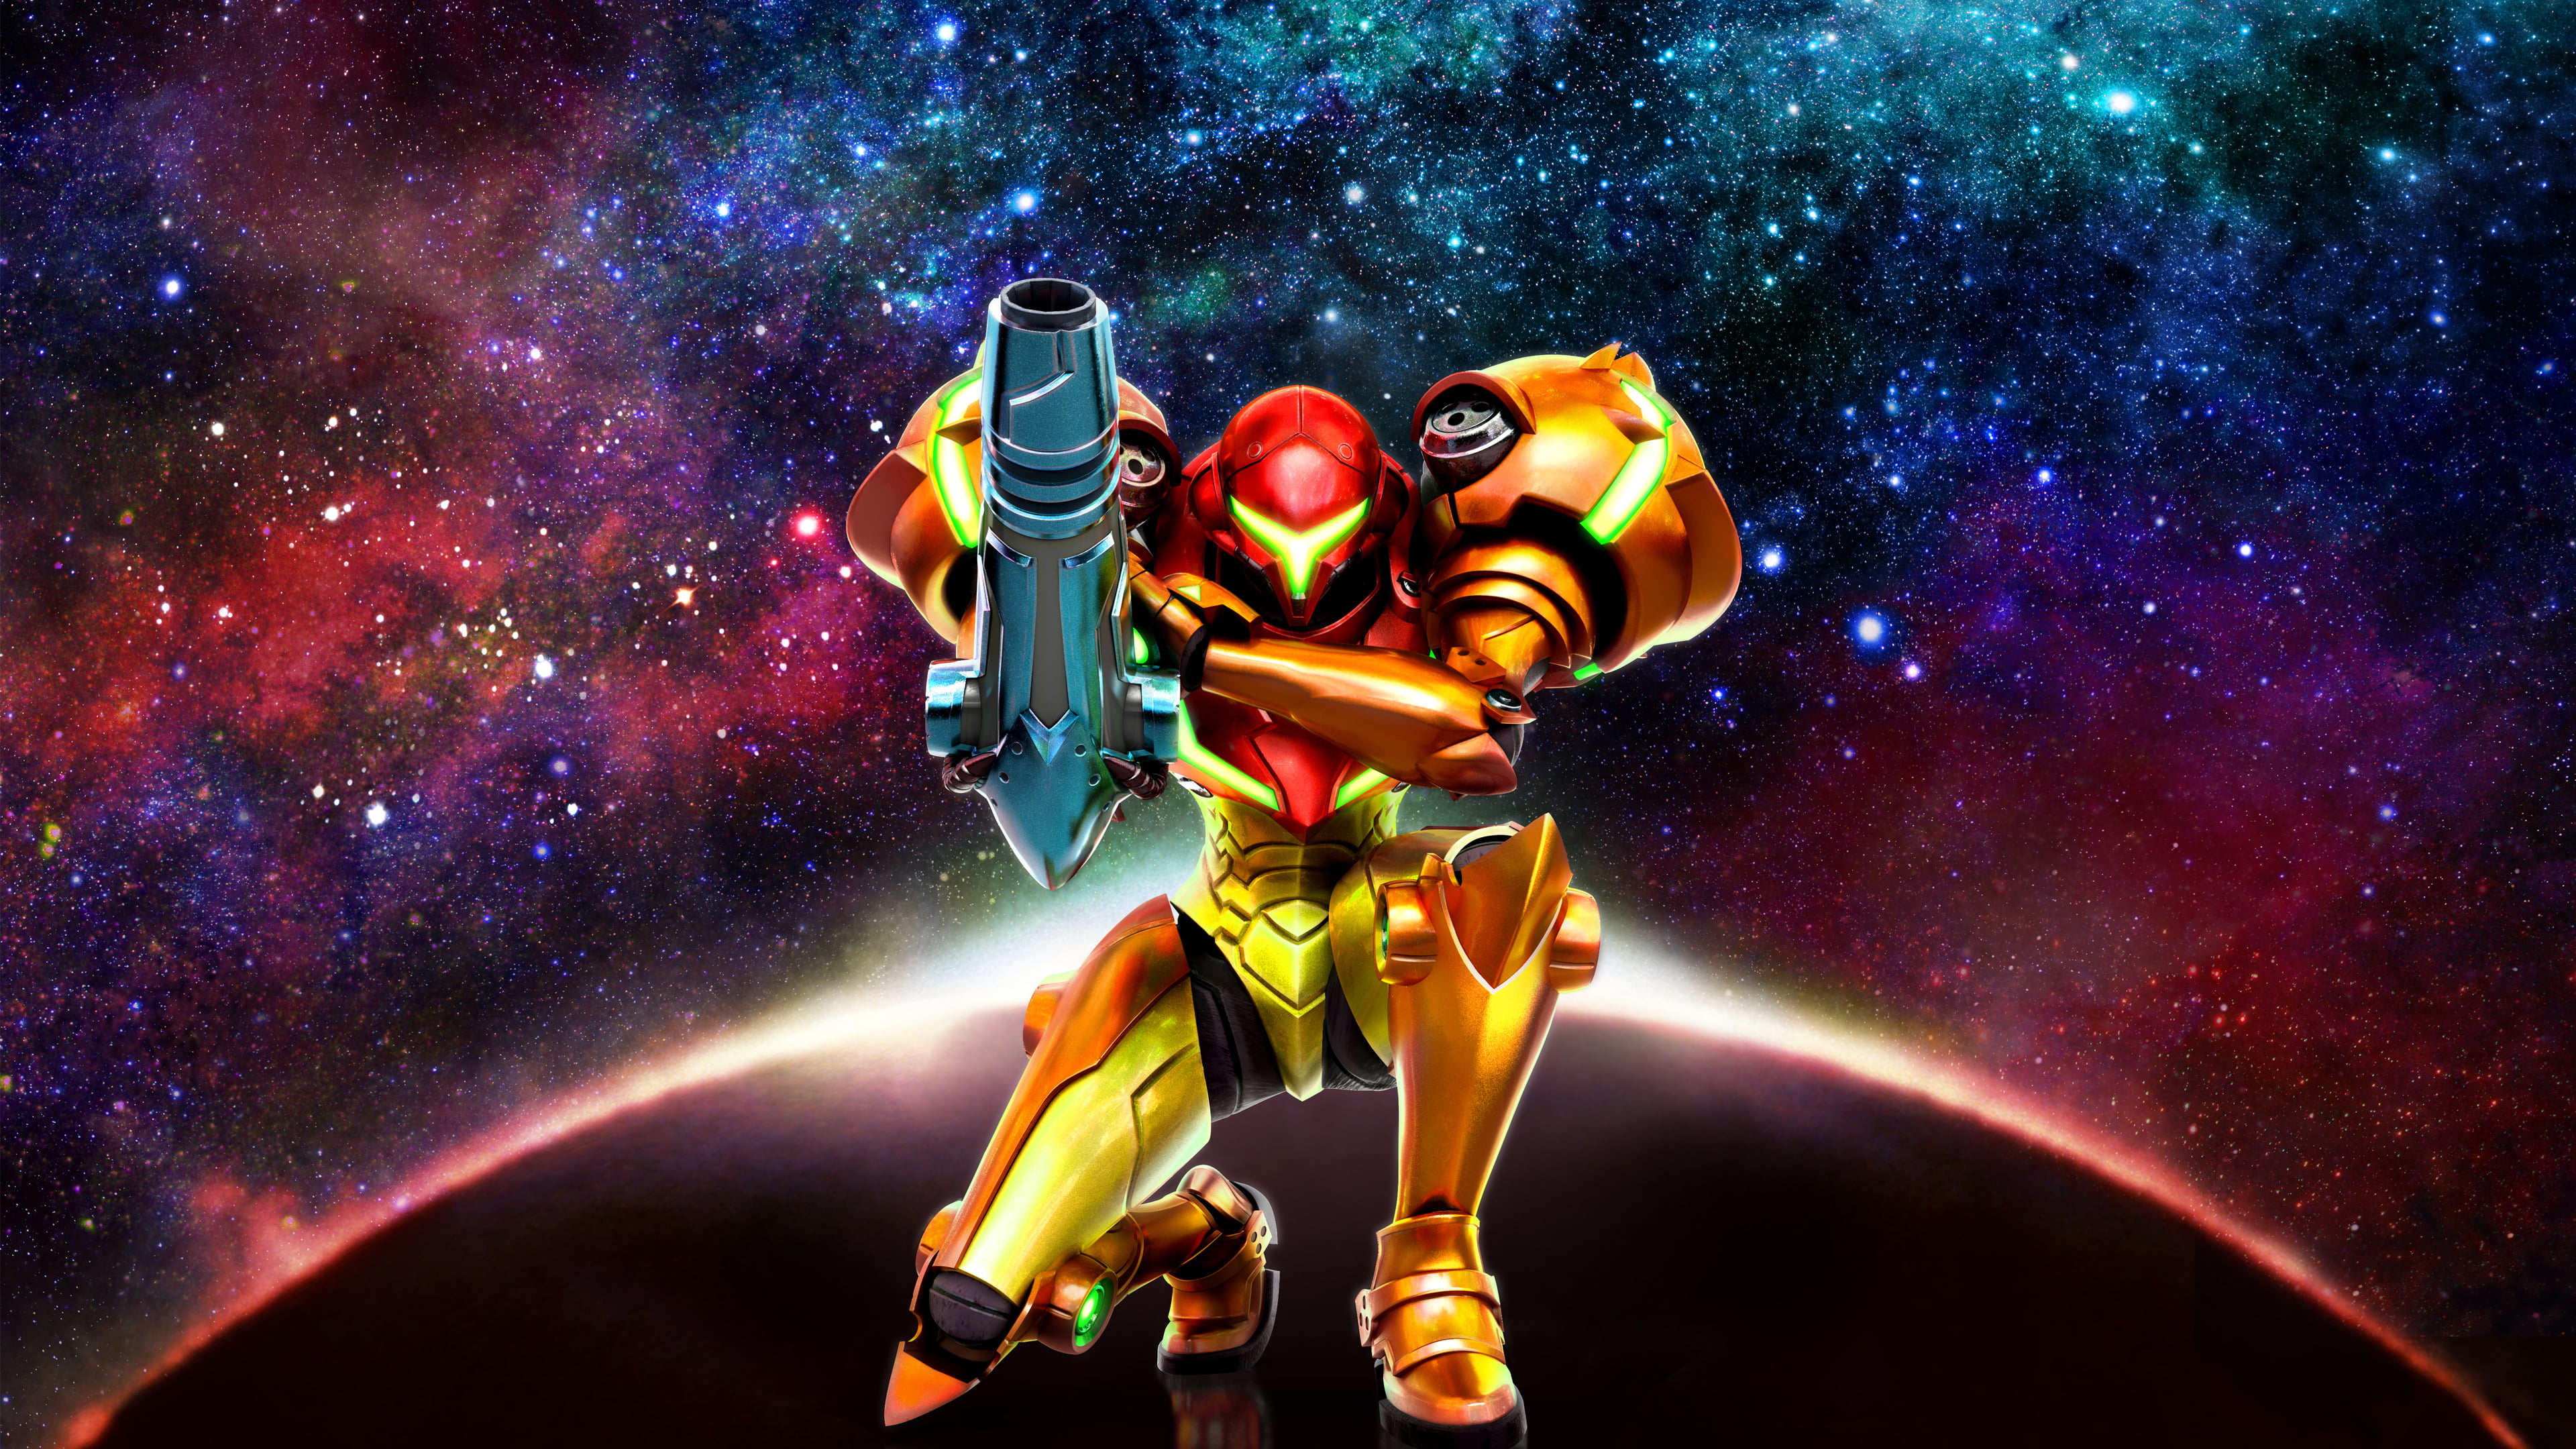 red and yellow robot kneeling while holding weapon wallpaper, Metroid, Samus Aran, Metroid: Samus Returns